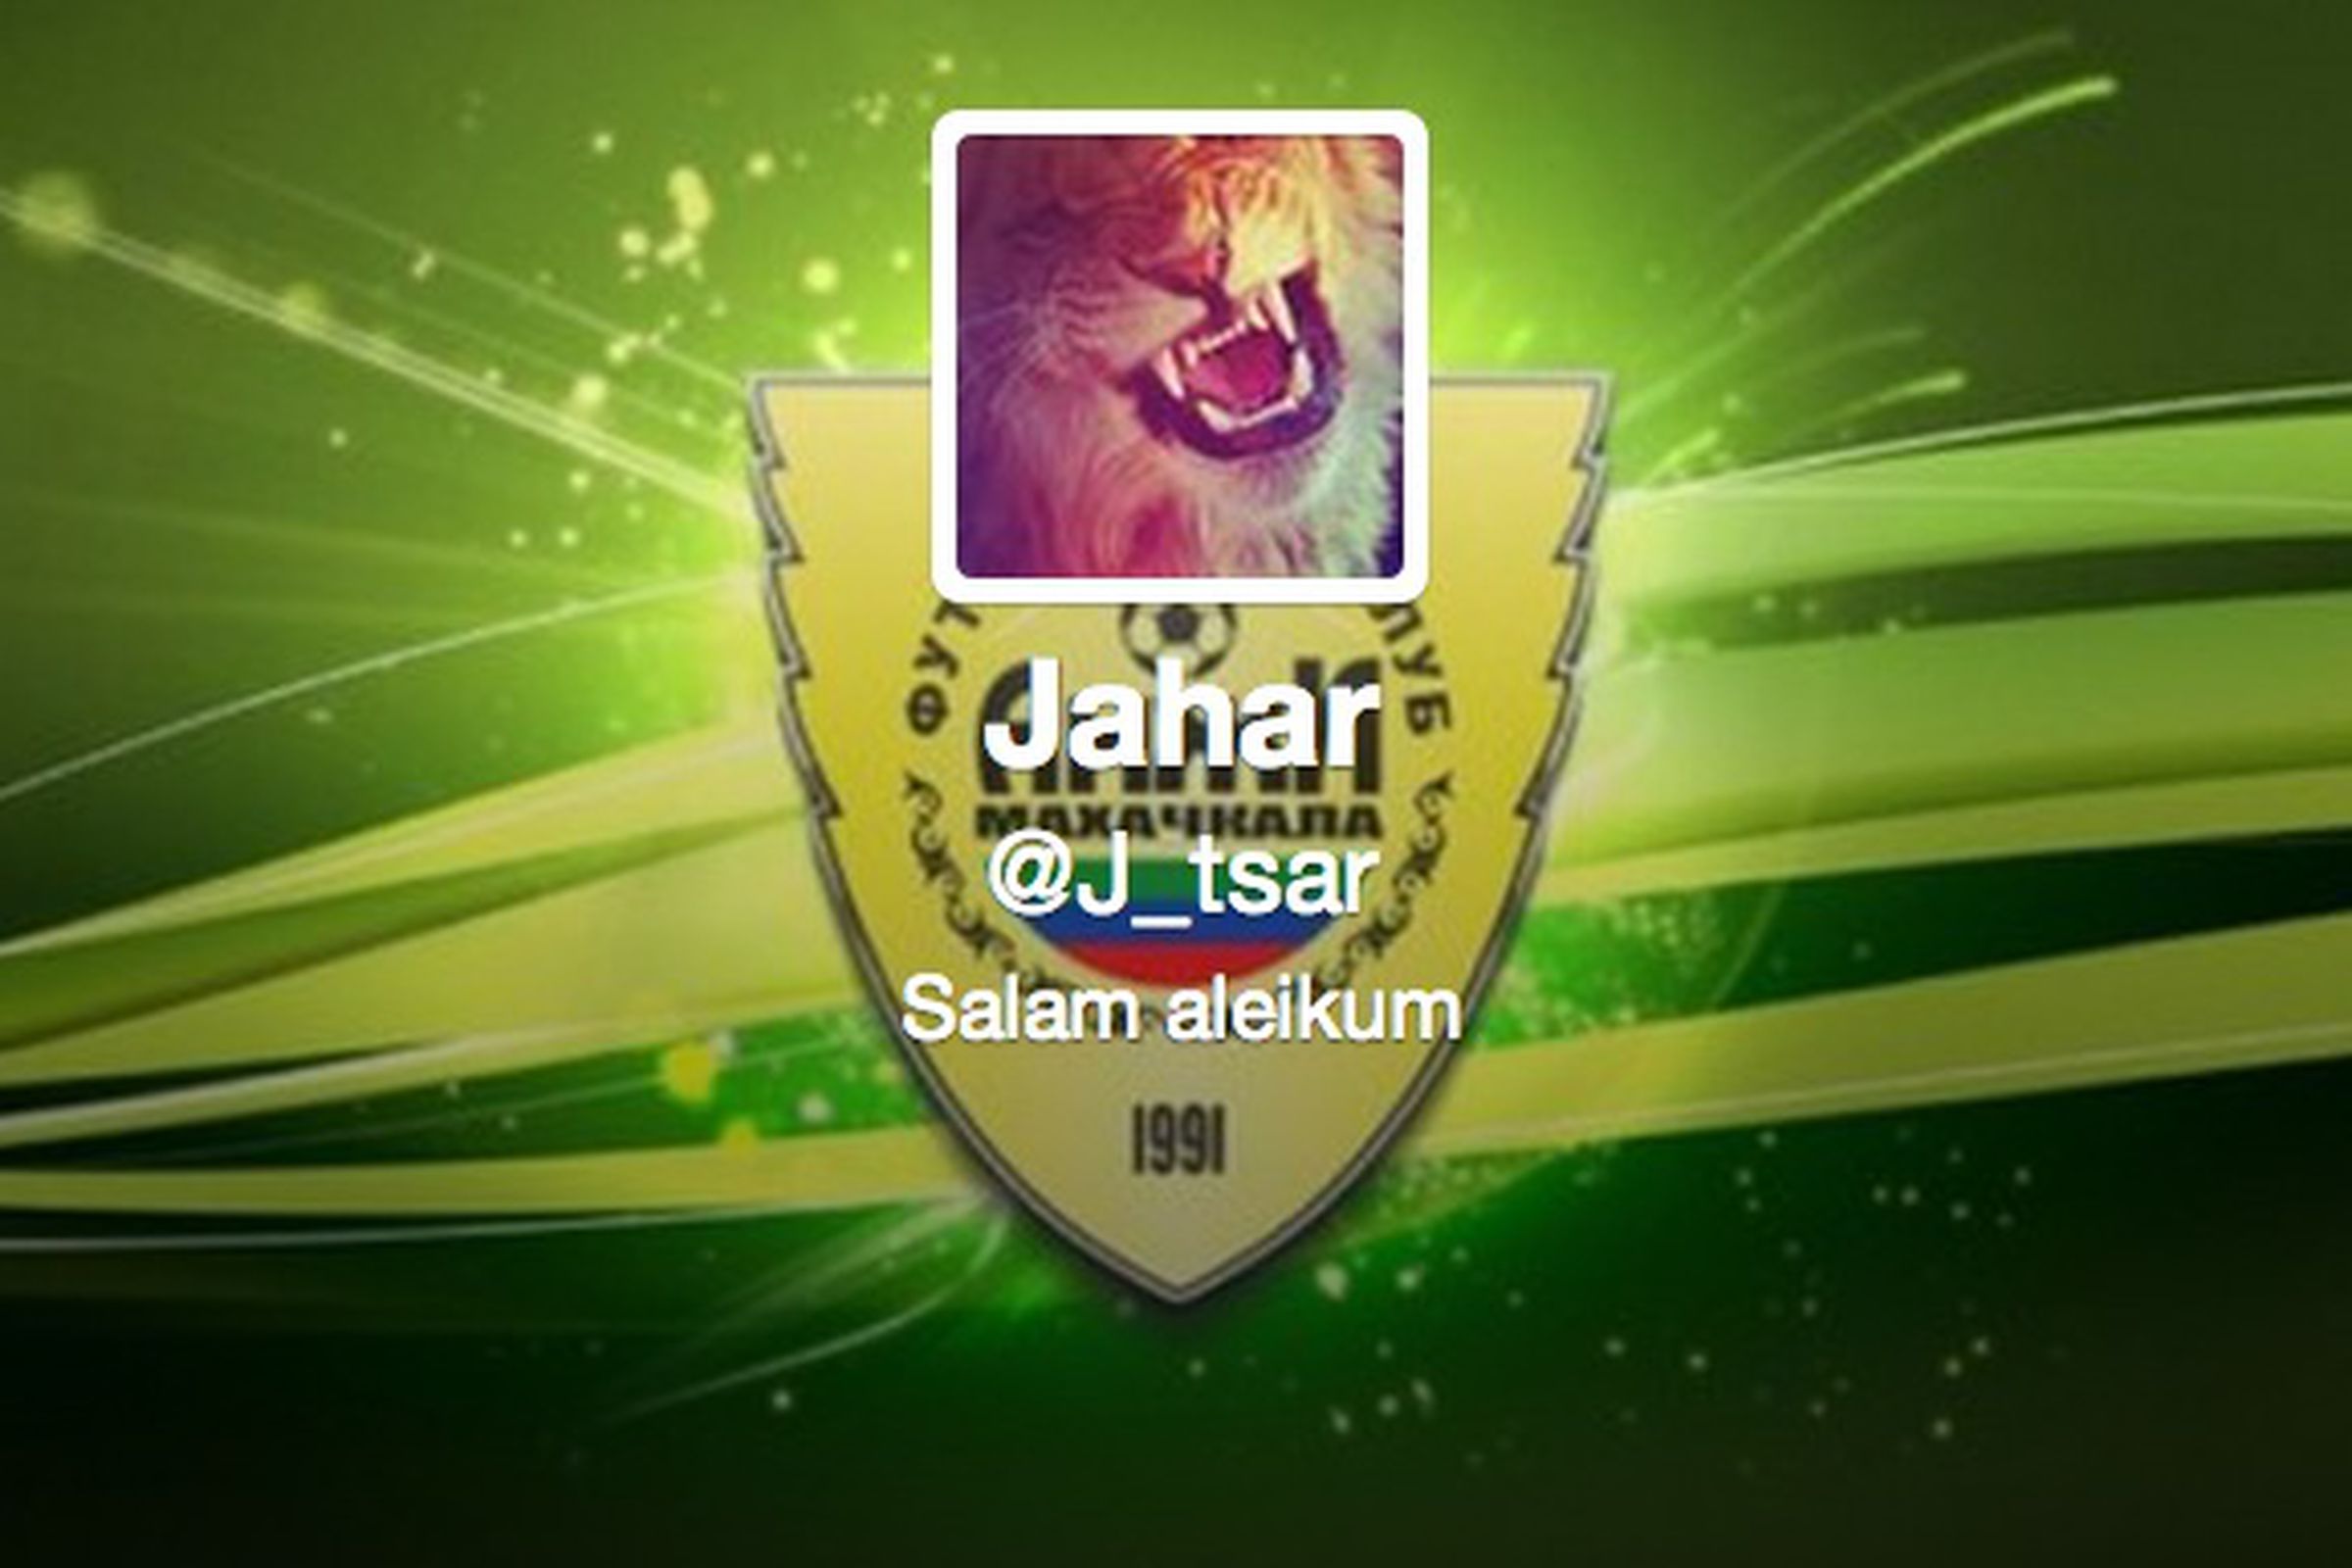 Jahar Twitter